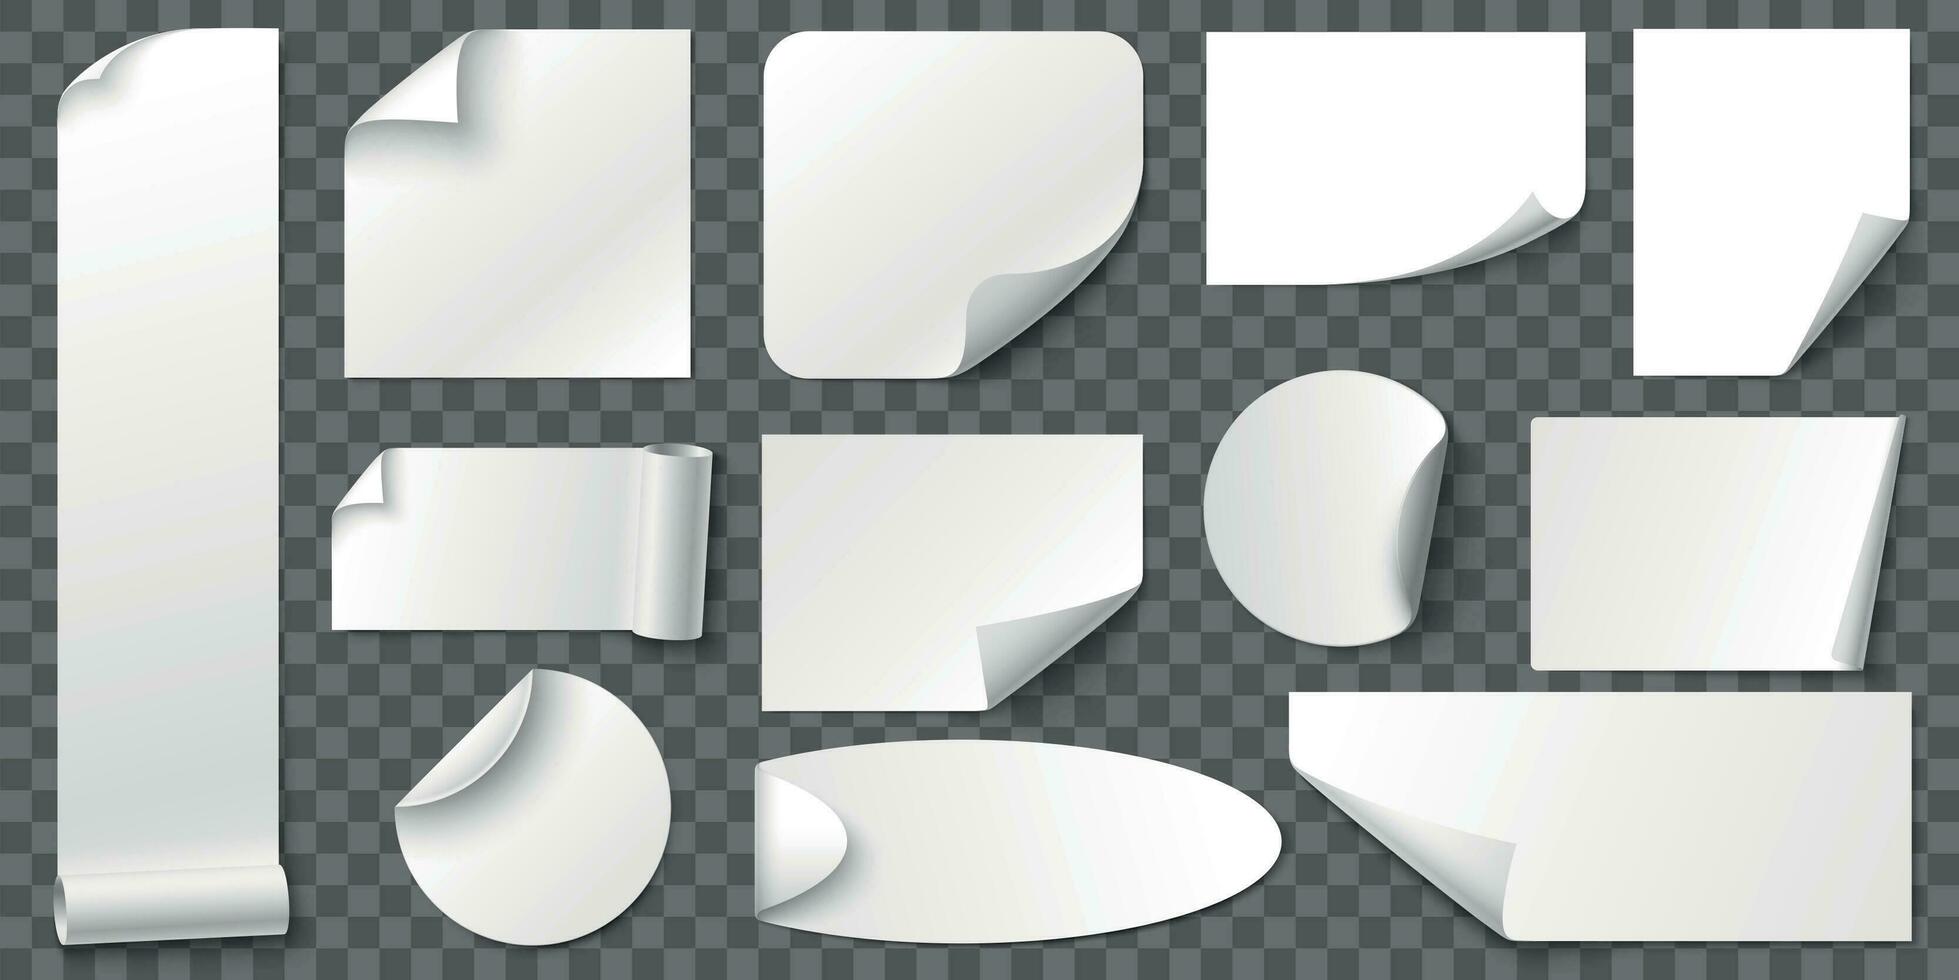 rizado rincones papel pegatinas adhesivo pegatina, blanco etiqueta etiquetas y etiqueta con realista sombra vector conjunto